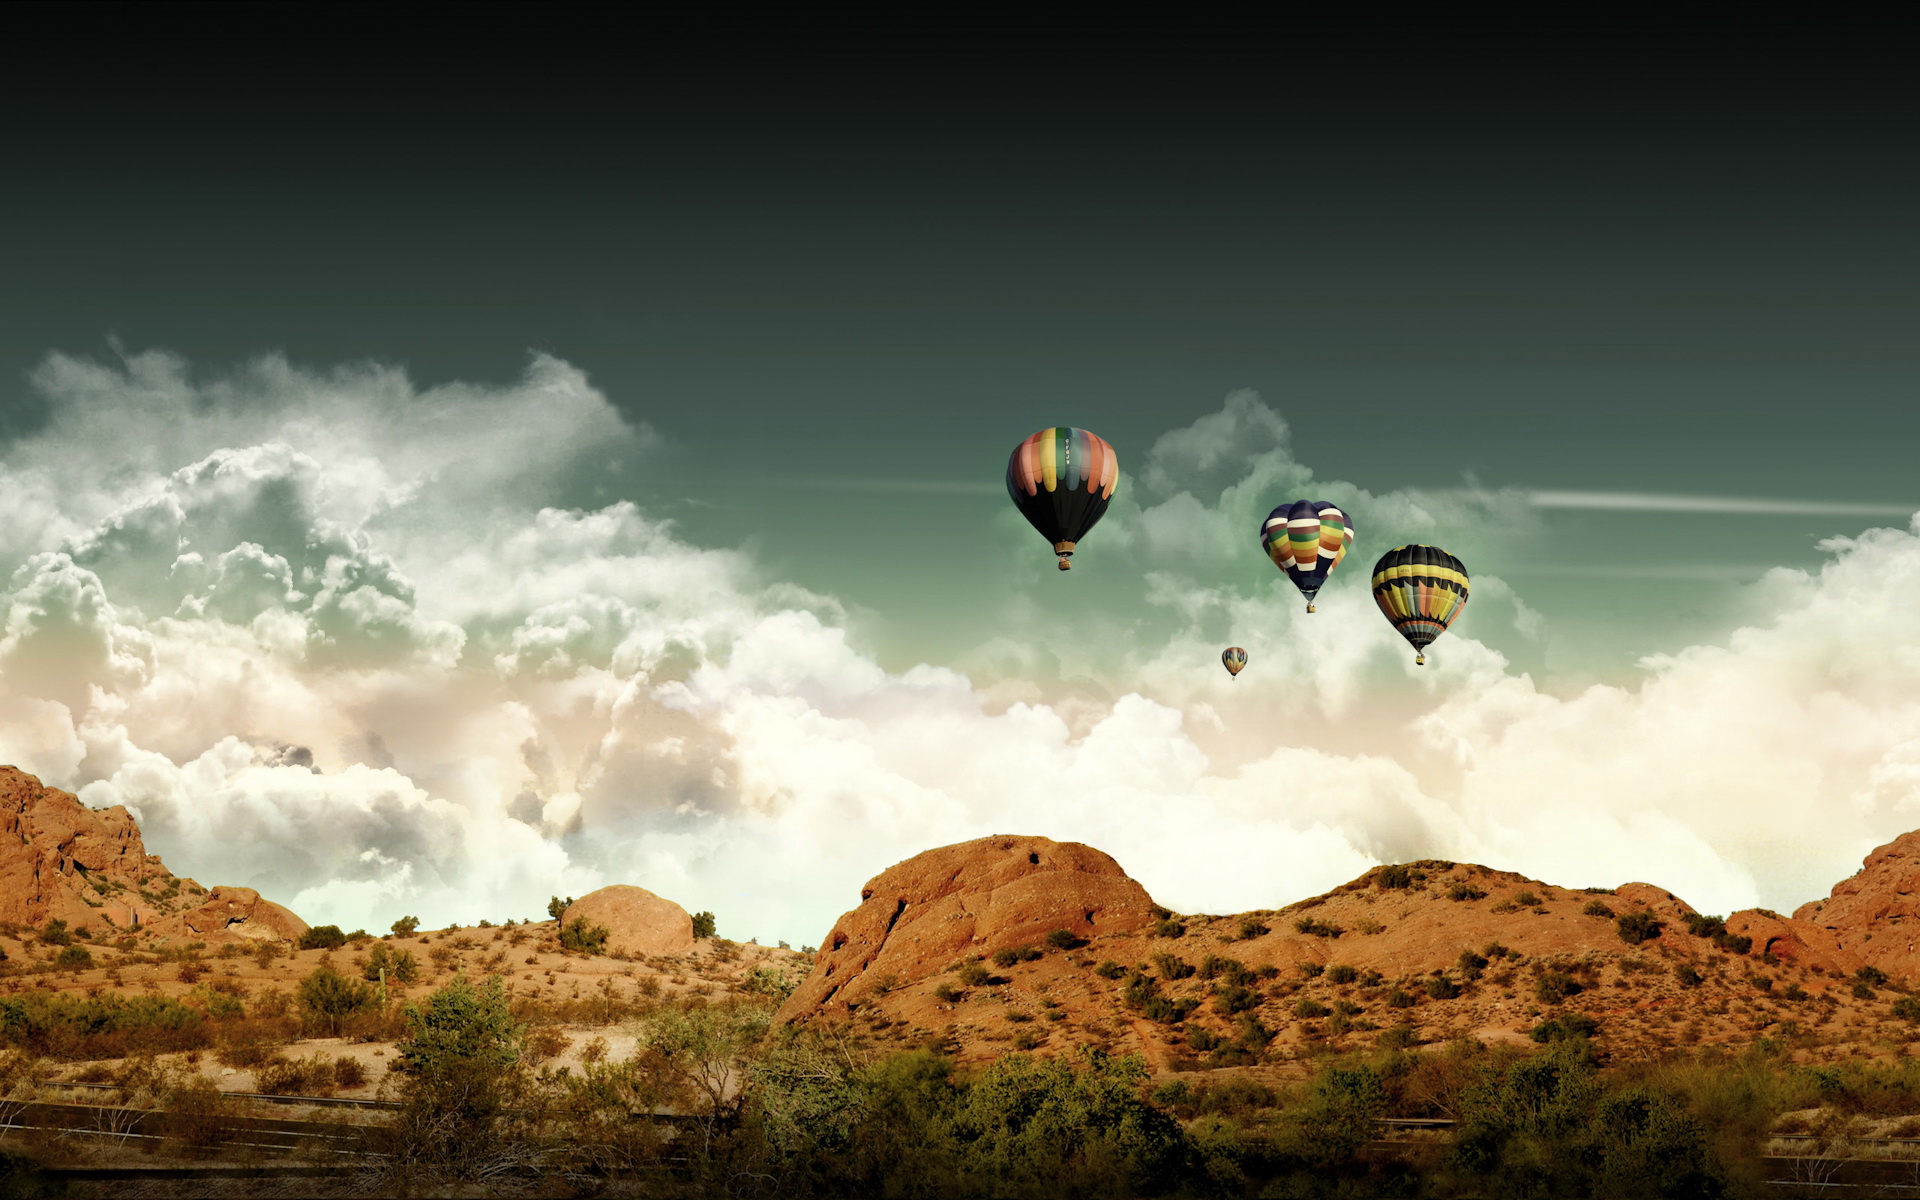 Previous, Widescreen - Air balloons wallpaper